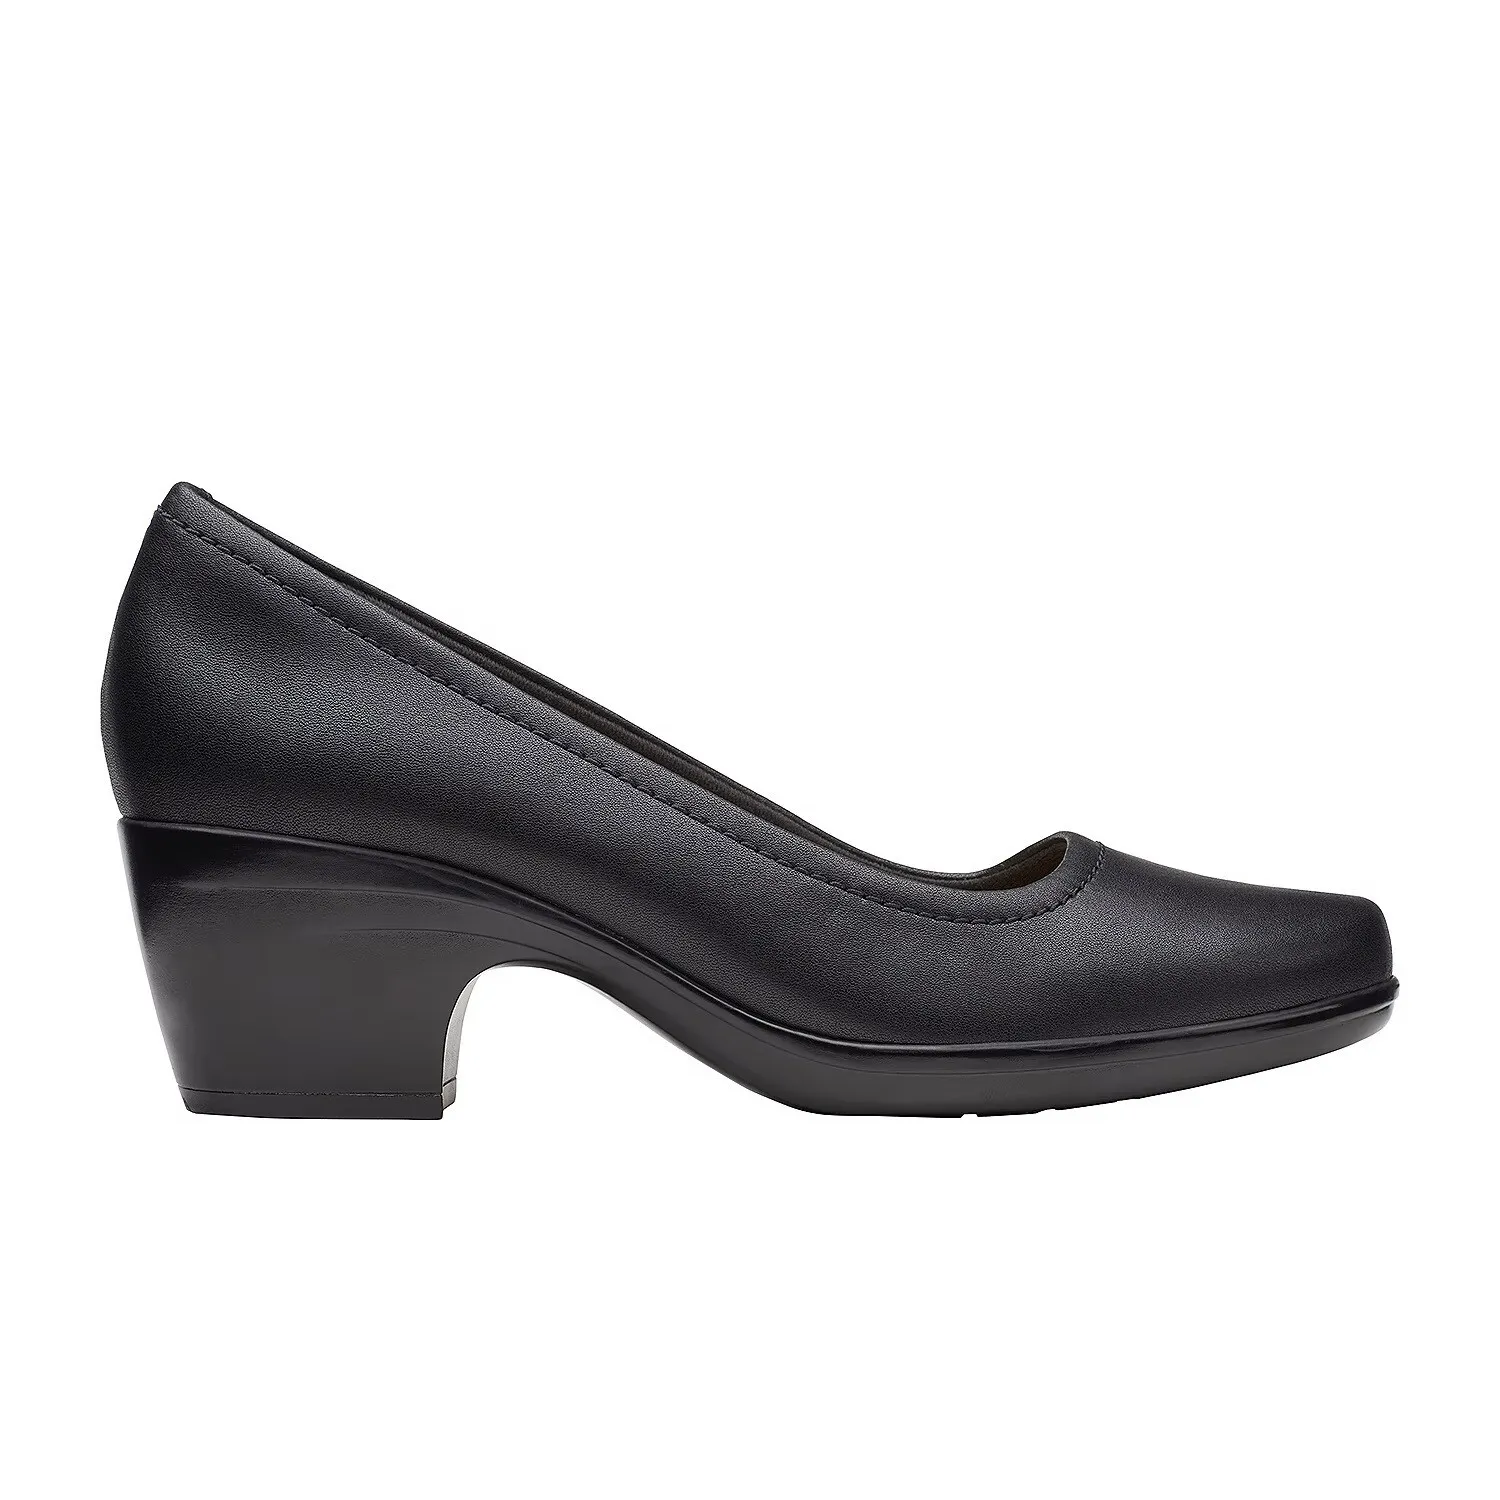 Женские туфли-лодочки Clarks, черные, цвет черный, размер 37.5 - фото 3